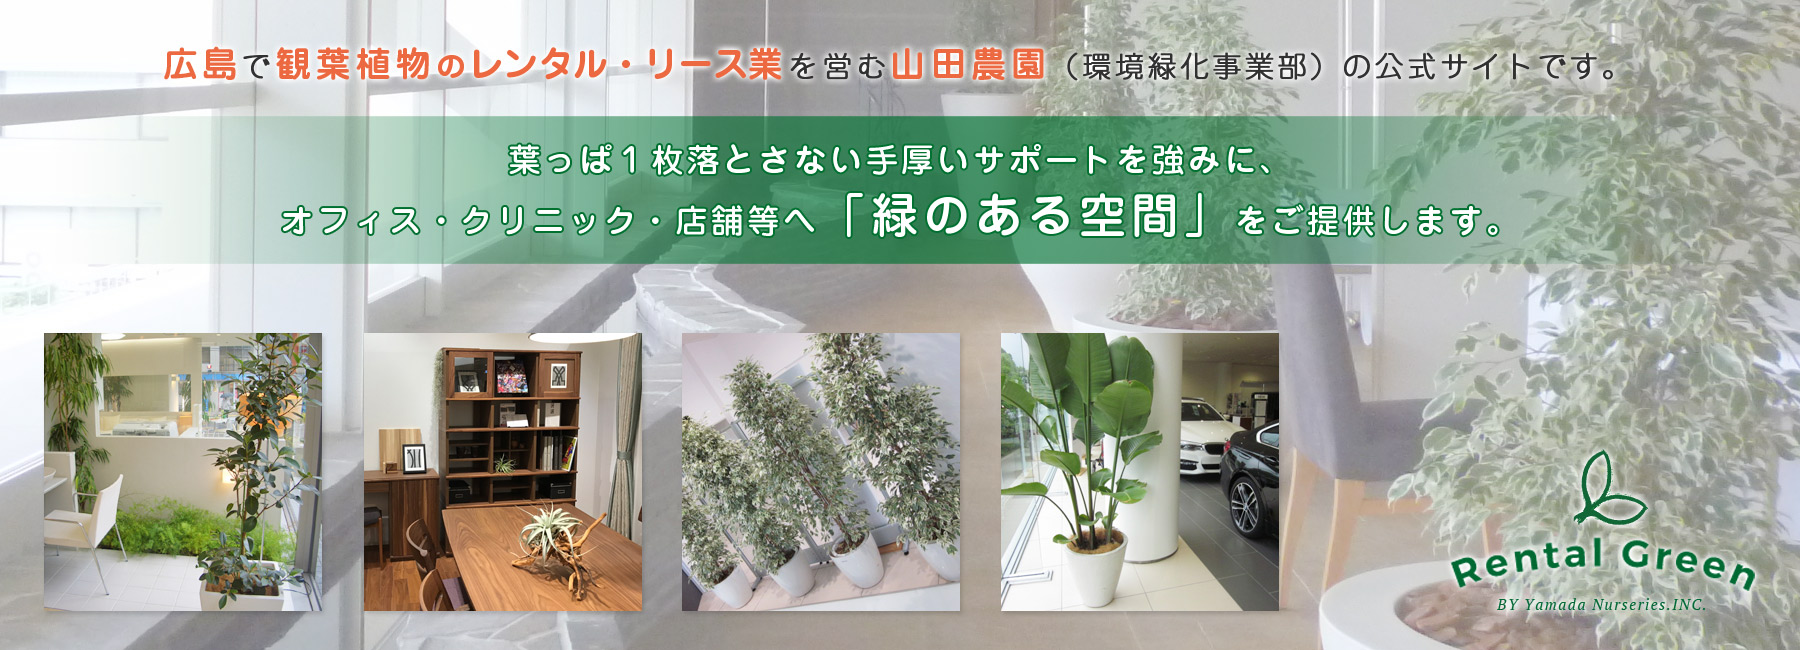  » 柱サボテン【広島で観葉植物レンタルのオススメ】